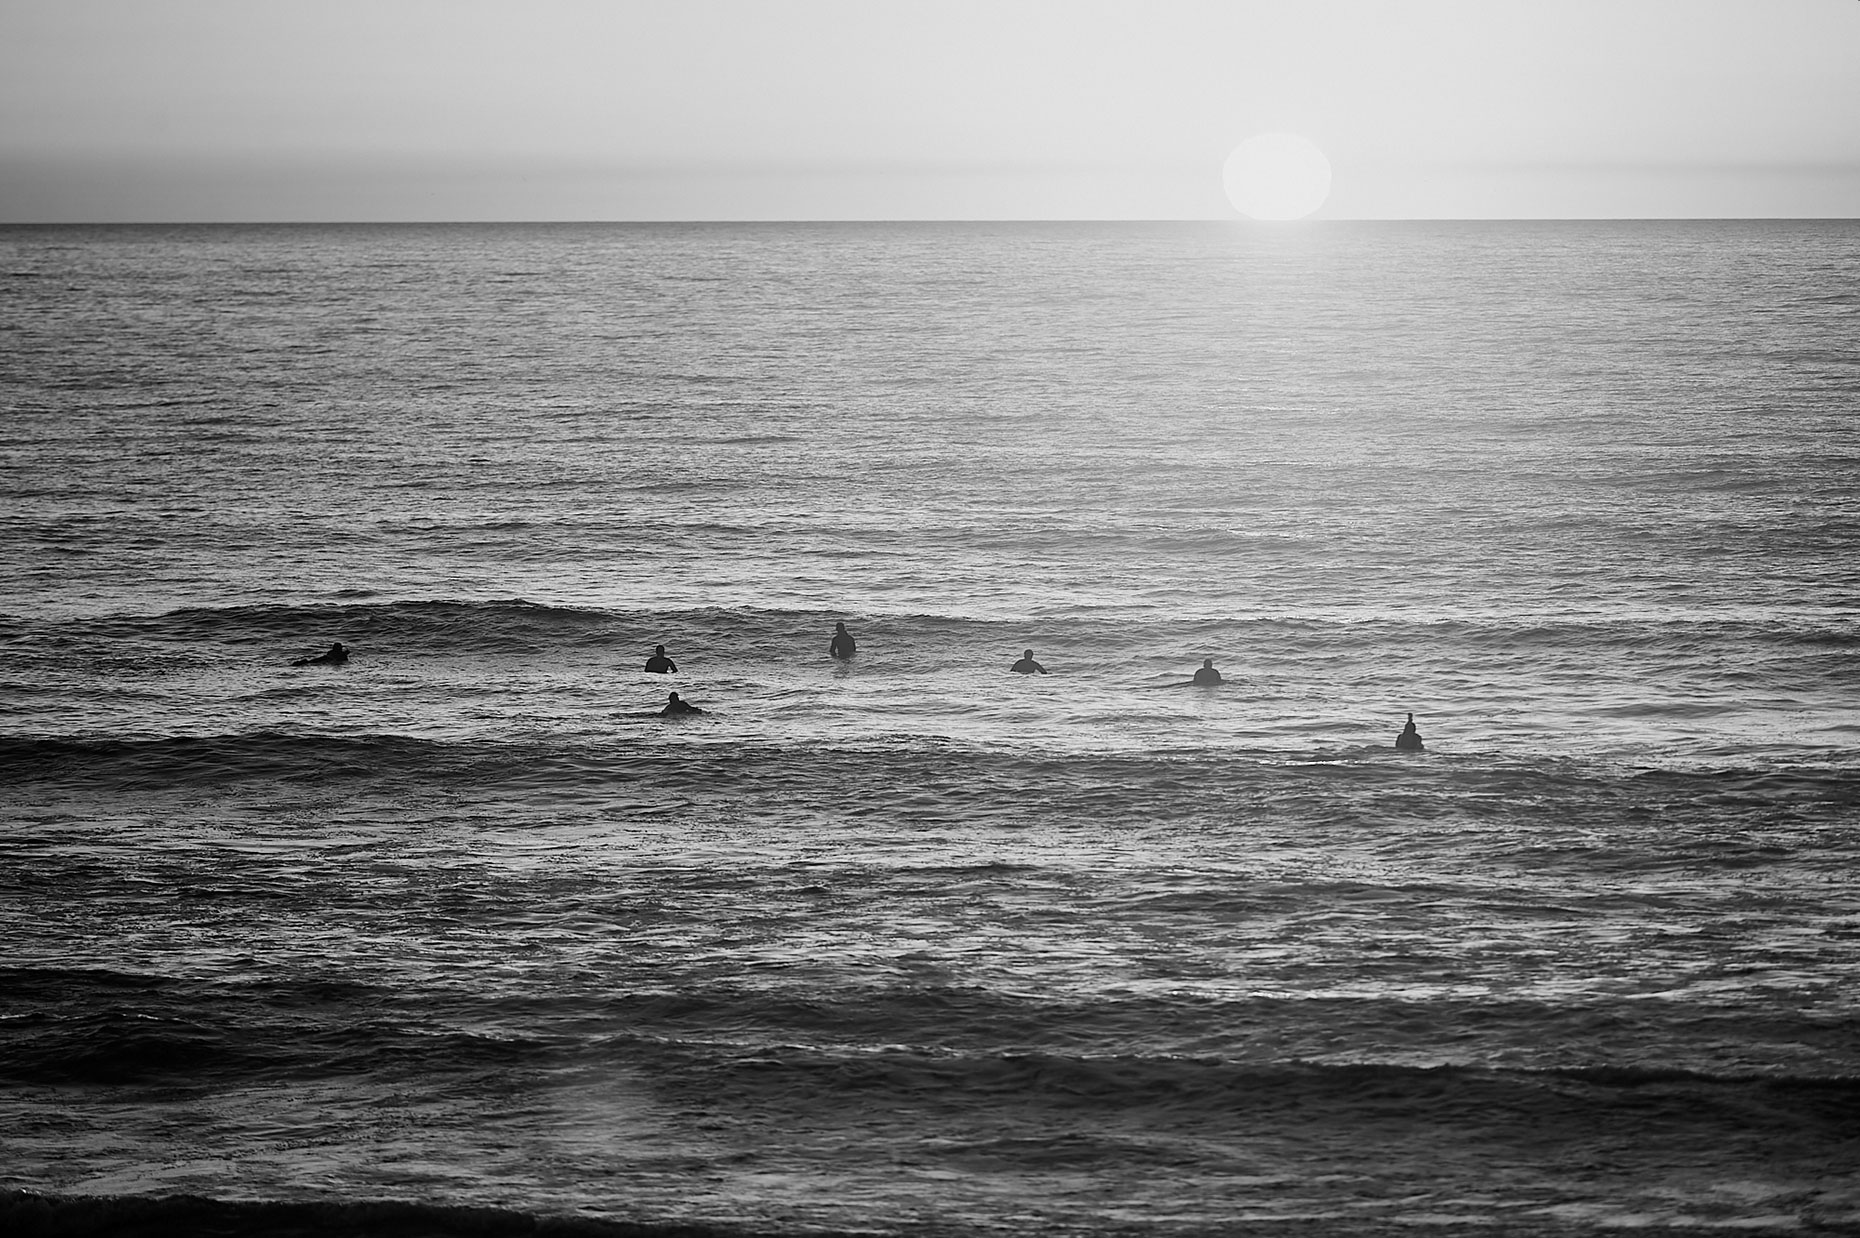 Sunset Surfers